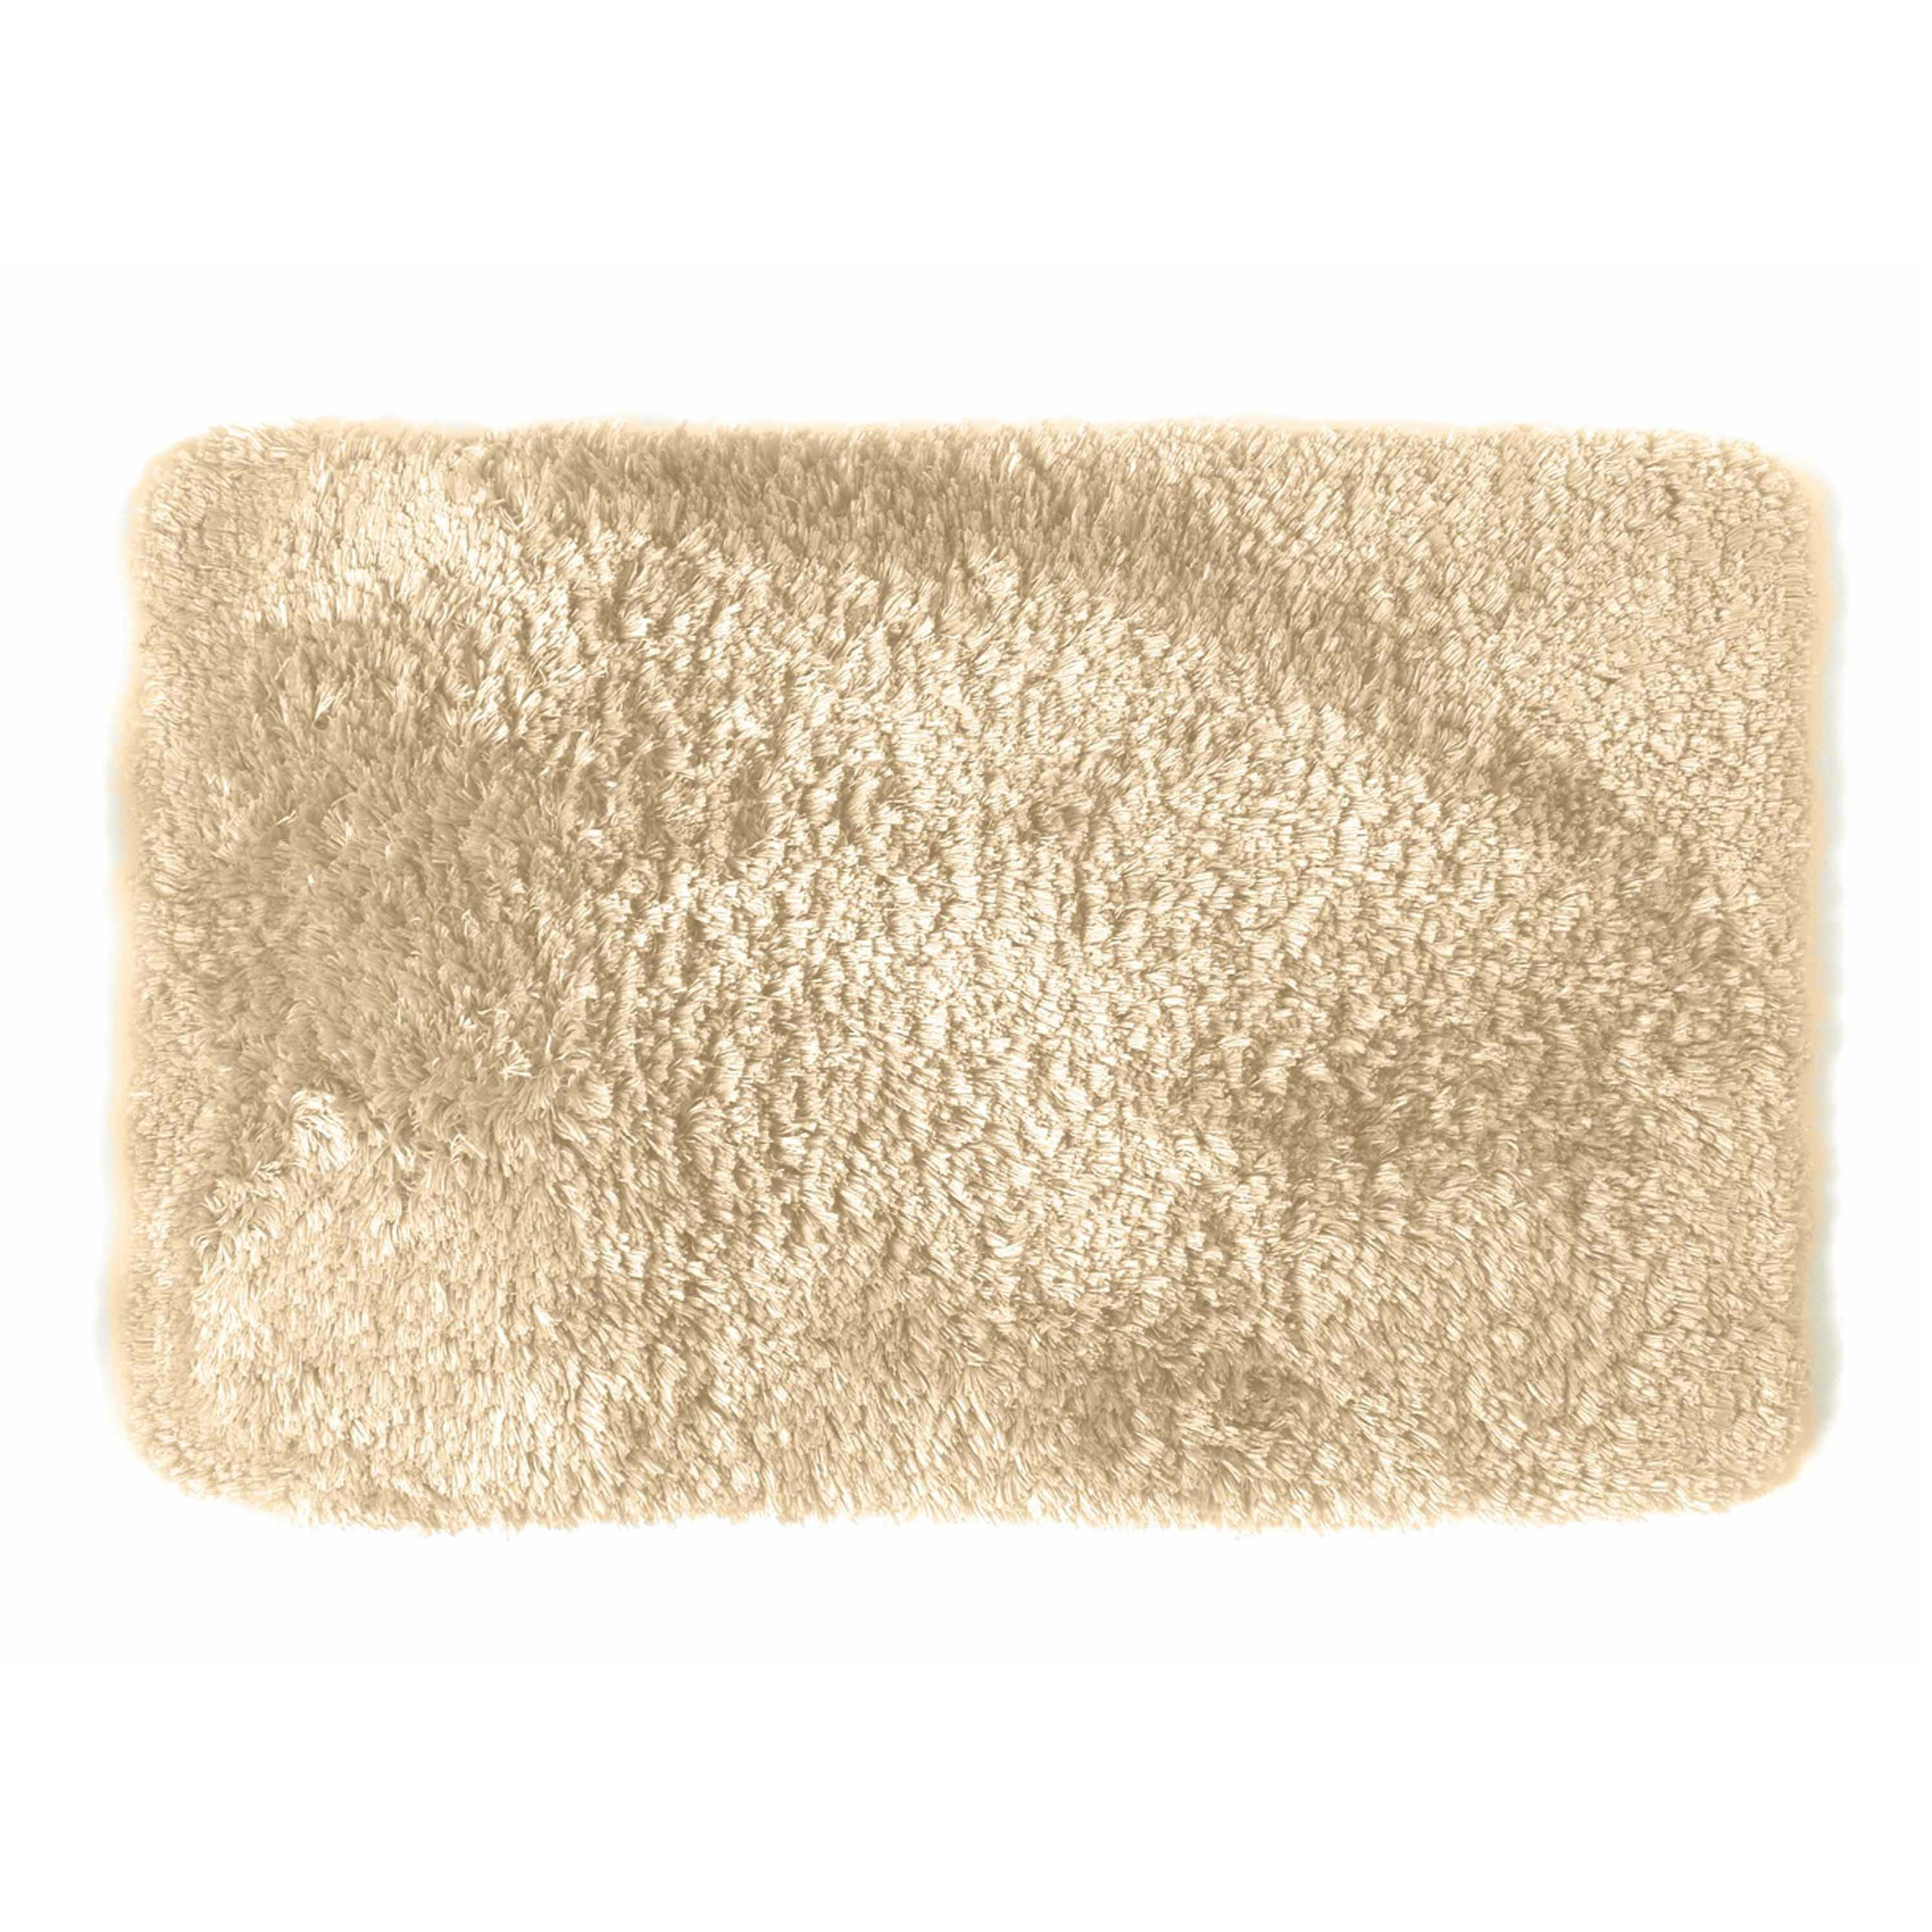 Spirella badkamer vloer kleedje-badmat tapijt hoogpolig en luxe uitvoering beige 40 x 60